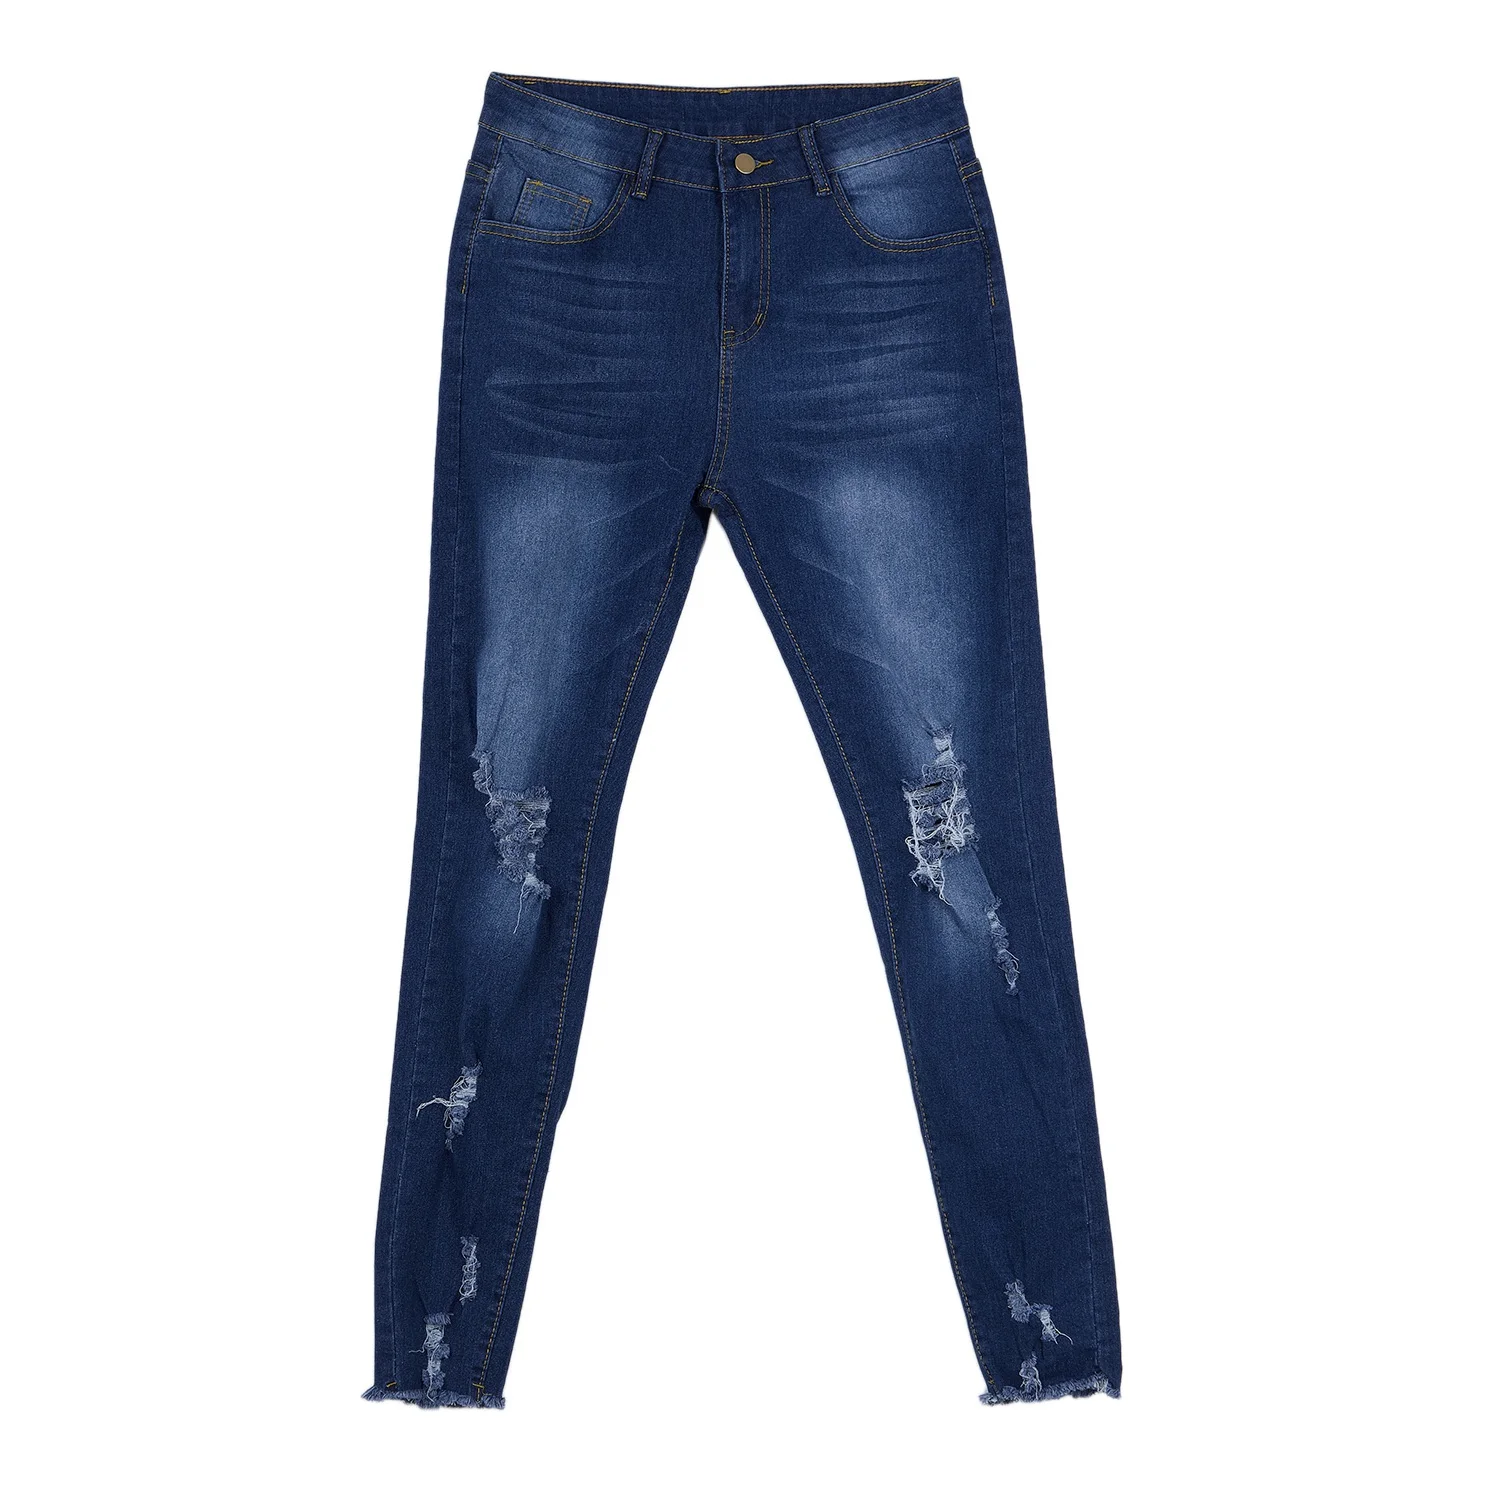 MYTL-Модные узкие джинсы с рваными коленками джинсы для Для женщин Slim Fit джинсы Уличная Удобная Повседневное узкие брюки